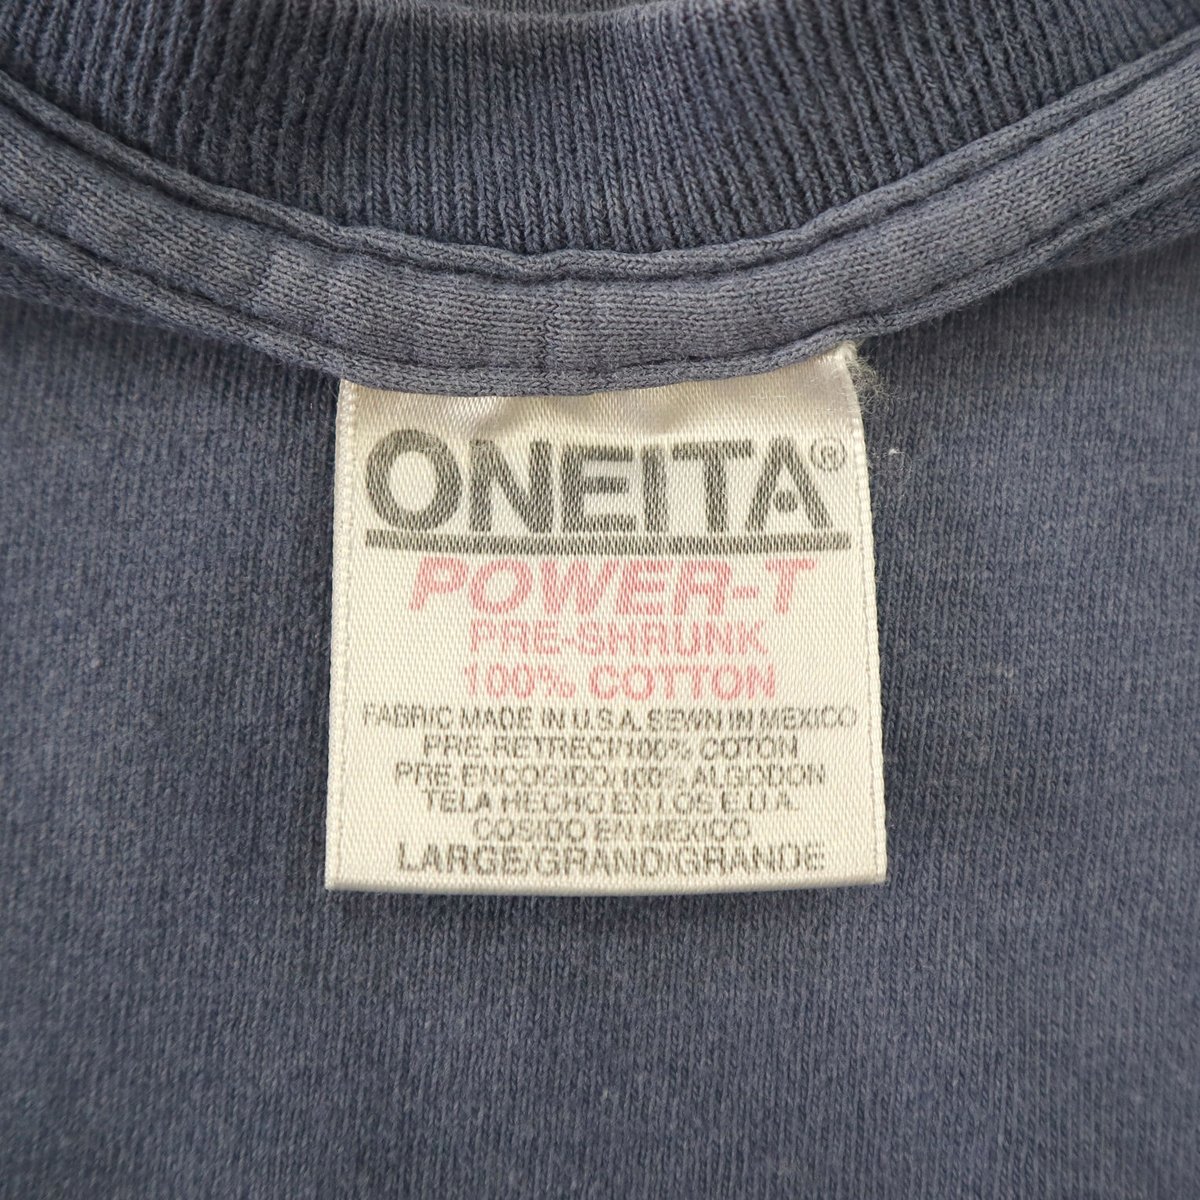 90's ONEITA 